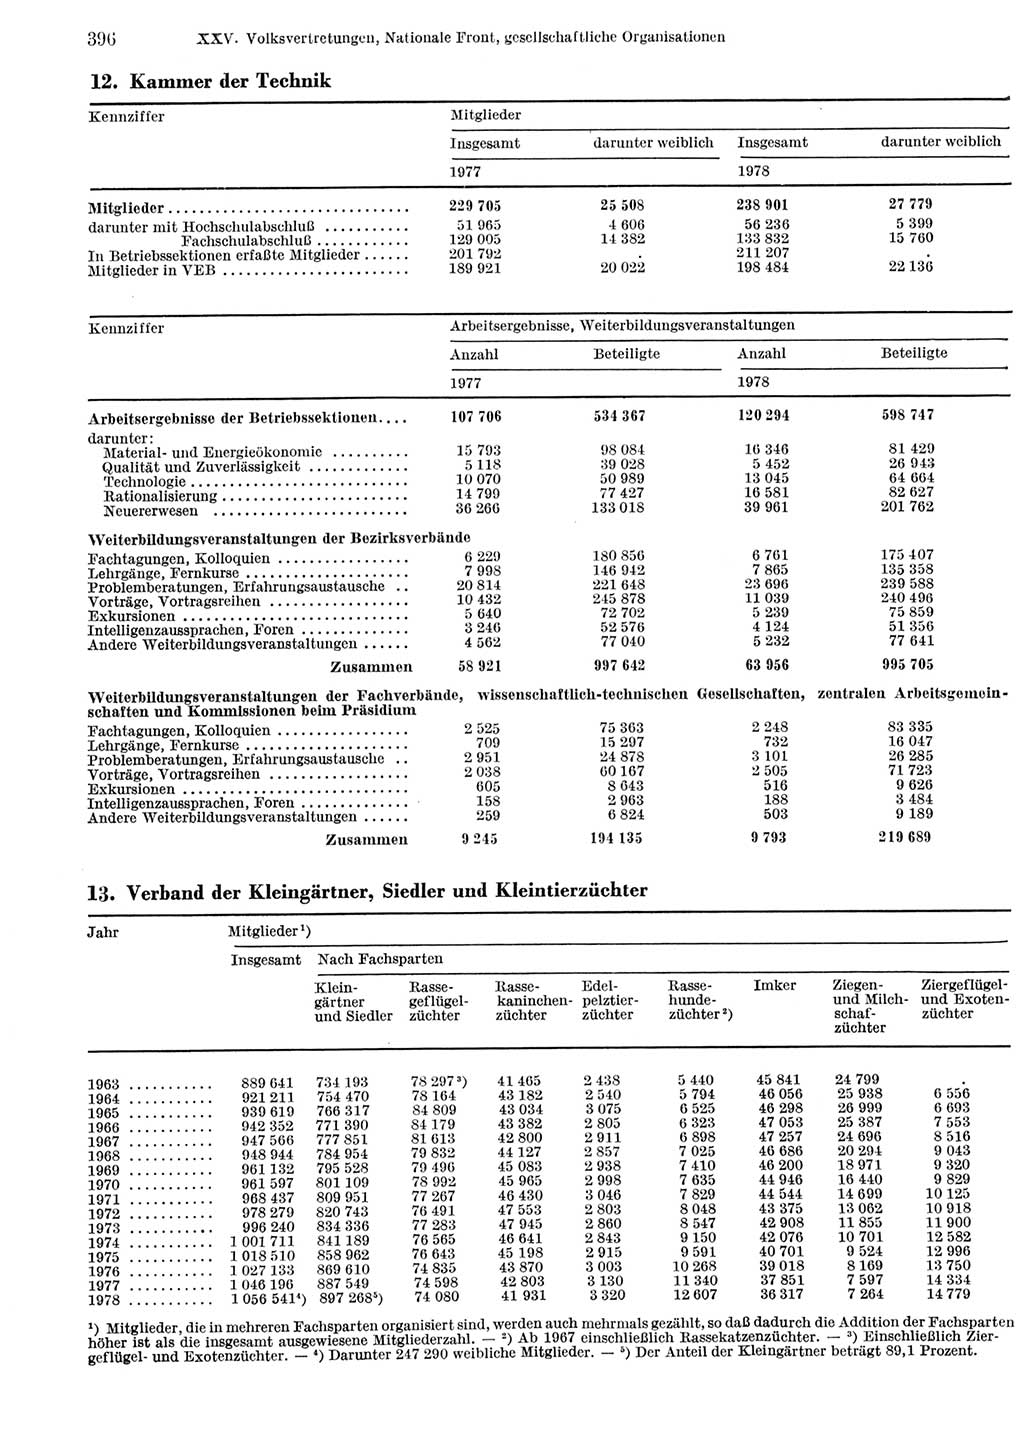 Statistisches Jahrbuch der Deutschen Demokratischen Republik (DDR) 1979, Seite 396 (Stat. Jb. DDR 1979, S. 396)